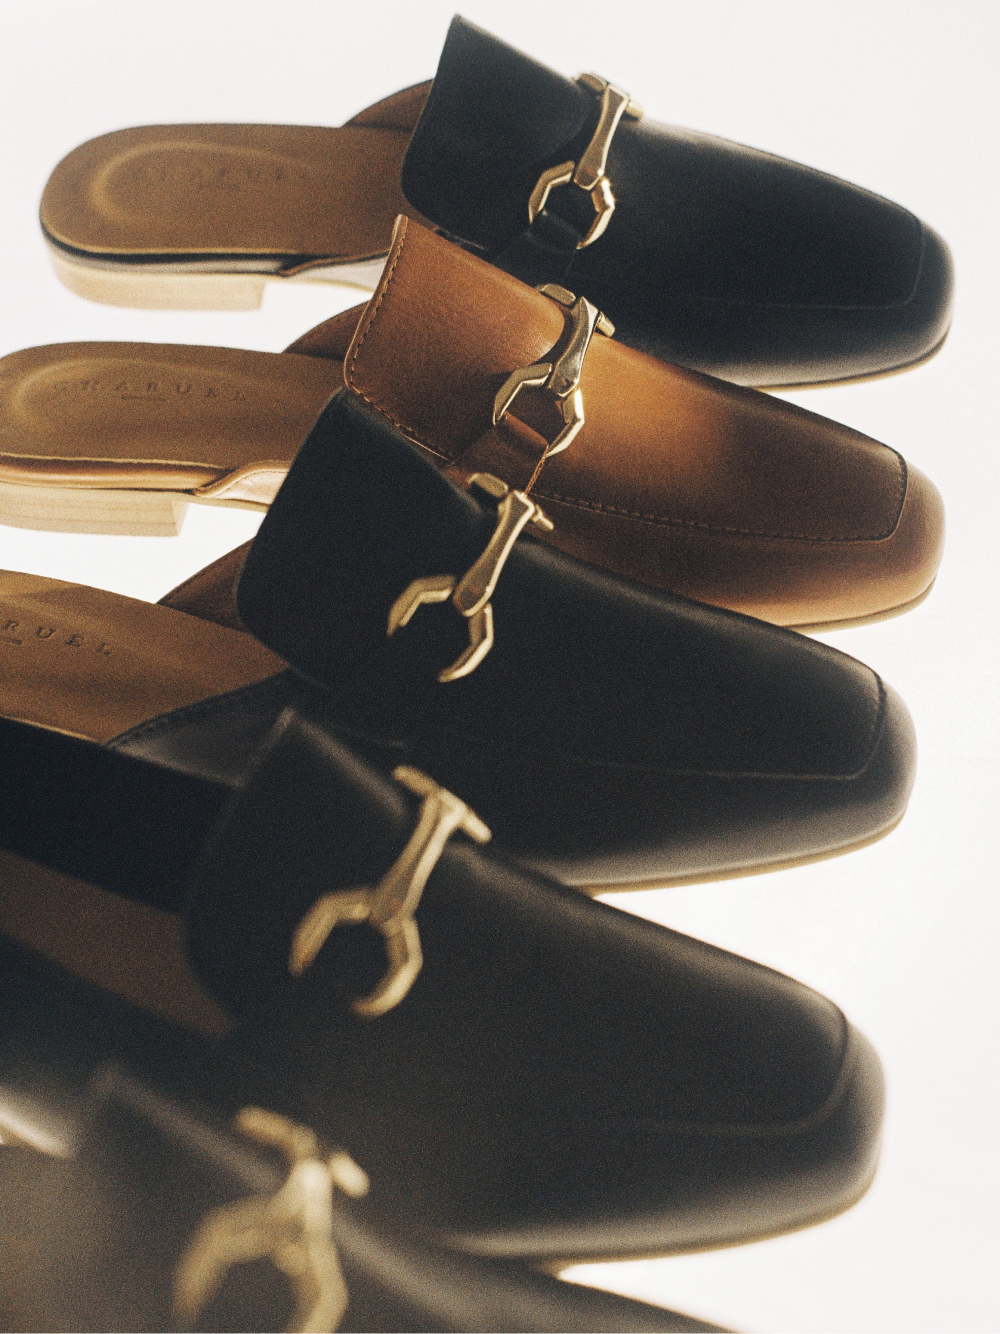 Бренд Charuel представил свою первую коллекцию обуви (фото 2)